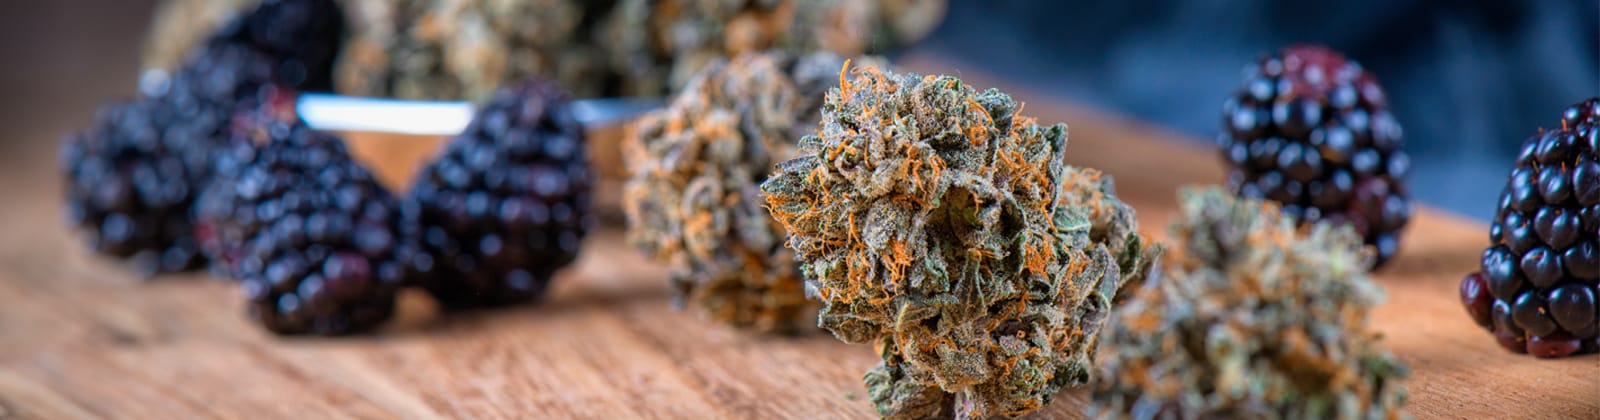 Der Geruch von Cannabis findet seinen Ursprung in Terpenen. Warum sie so duften und was sie bewirken, erfährst du hier!